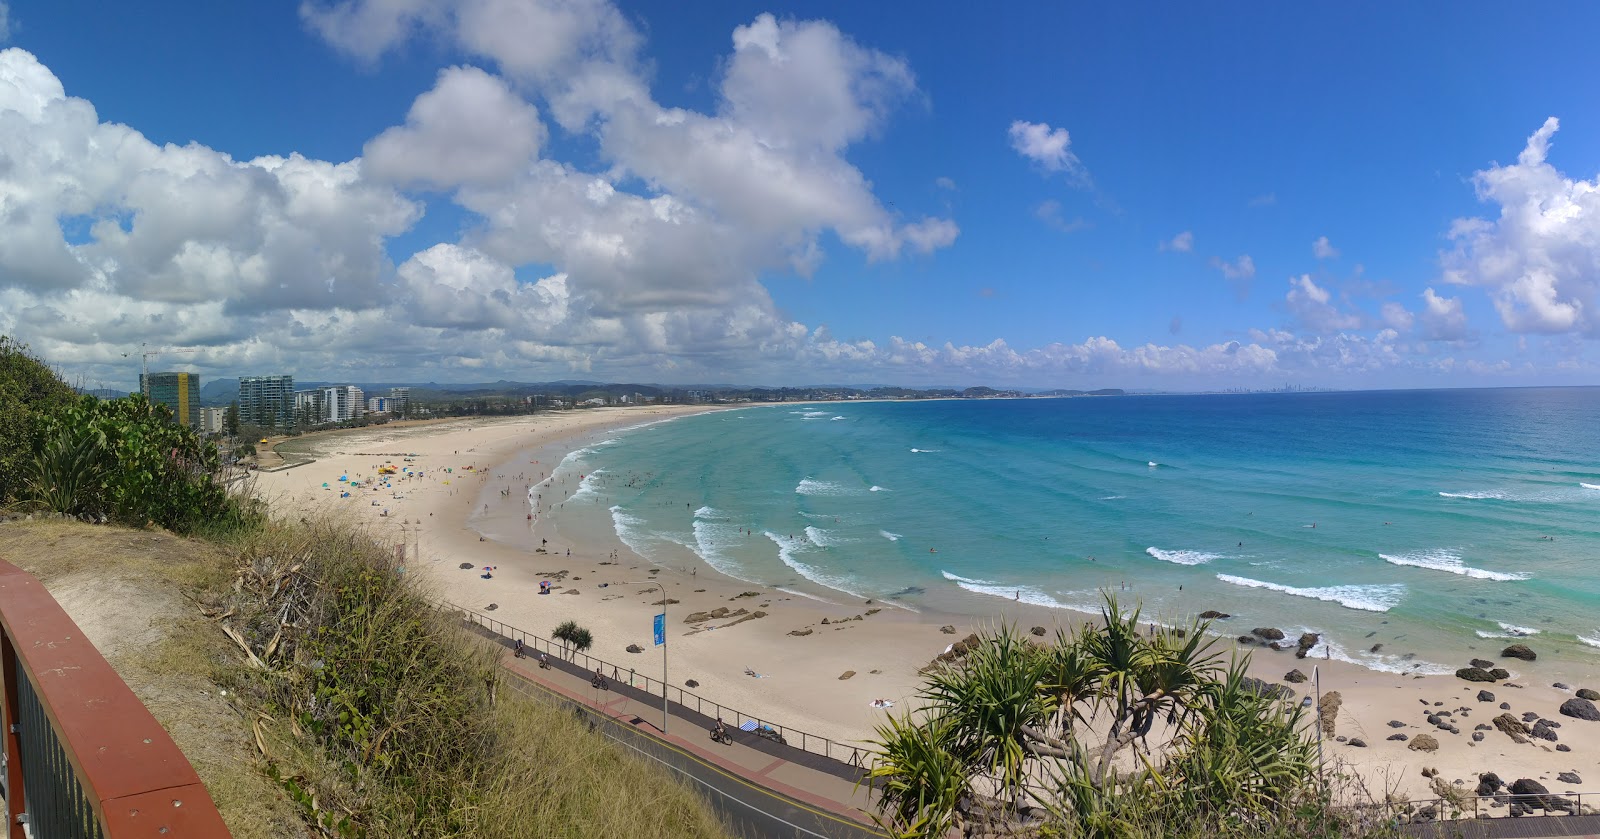 Photo de Kirra Beach - endroit populaire parmi les connaisseurs de la détente